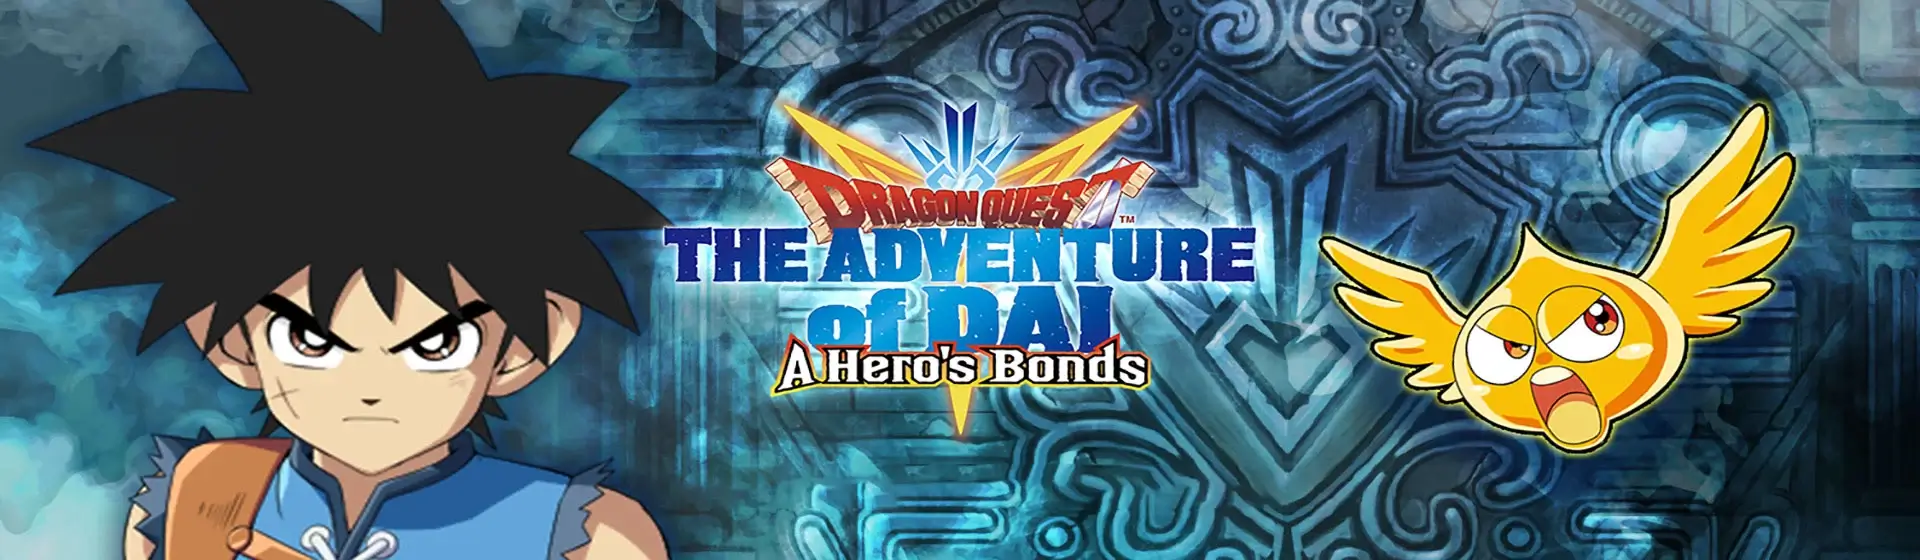 Dragon quest the adventure of dai. Dragon Quest the Adventure of dai: a Hero's Bonds.